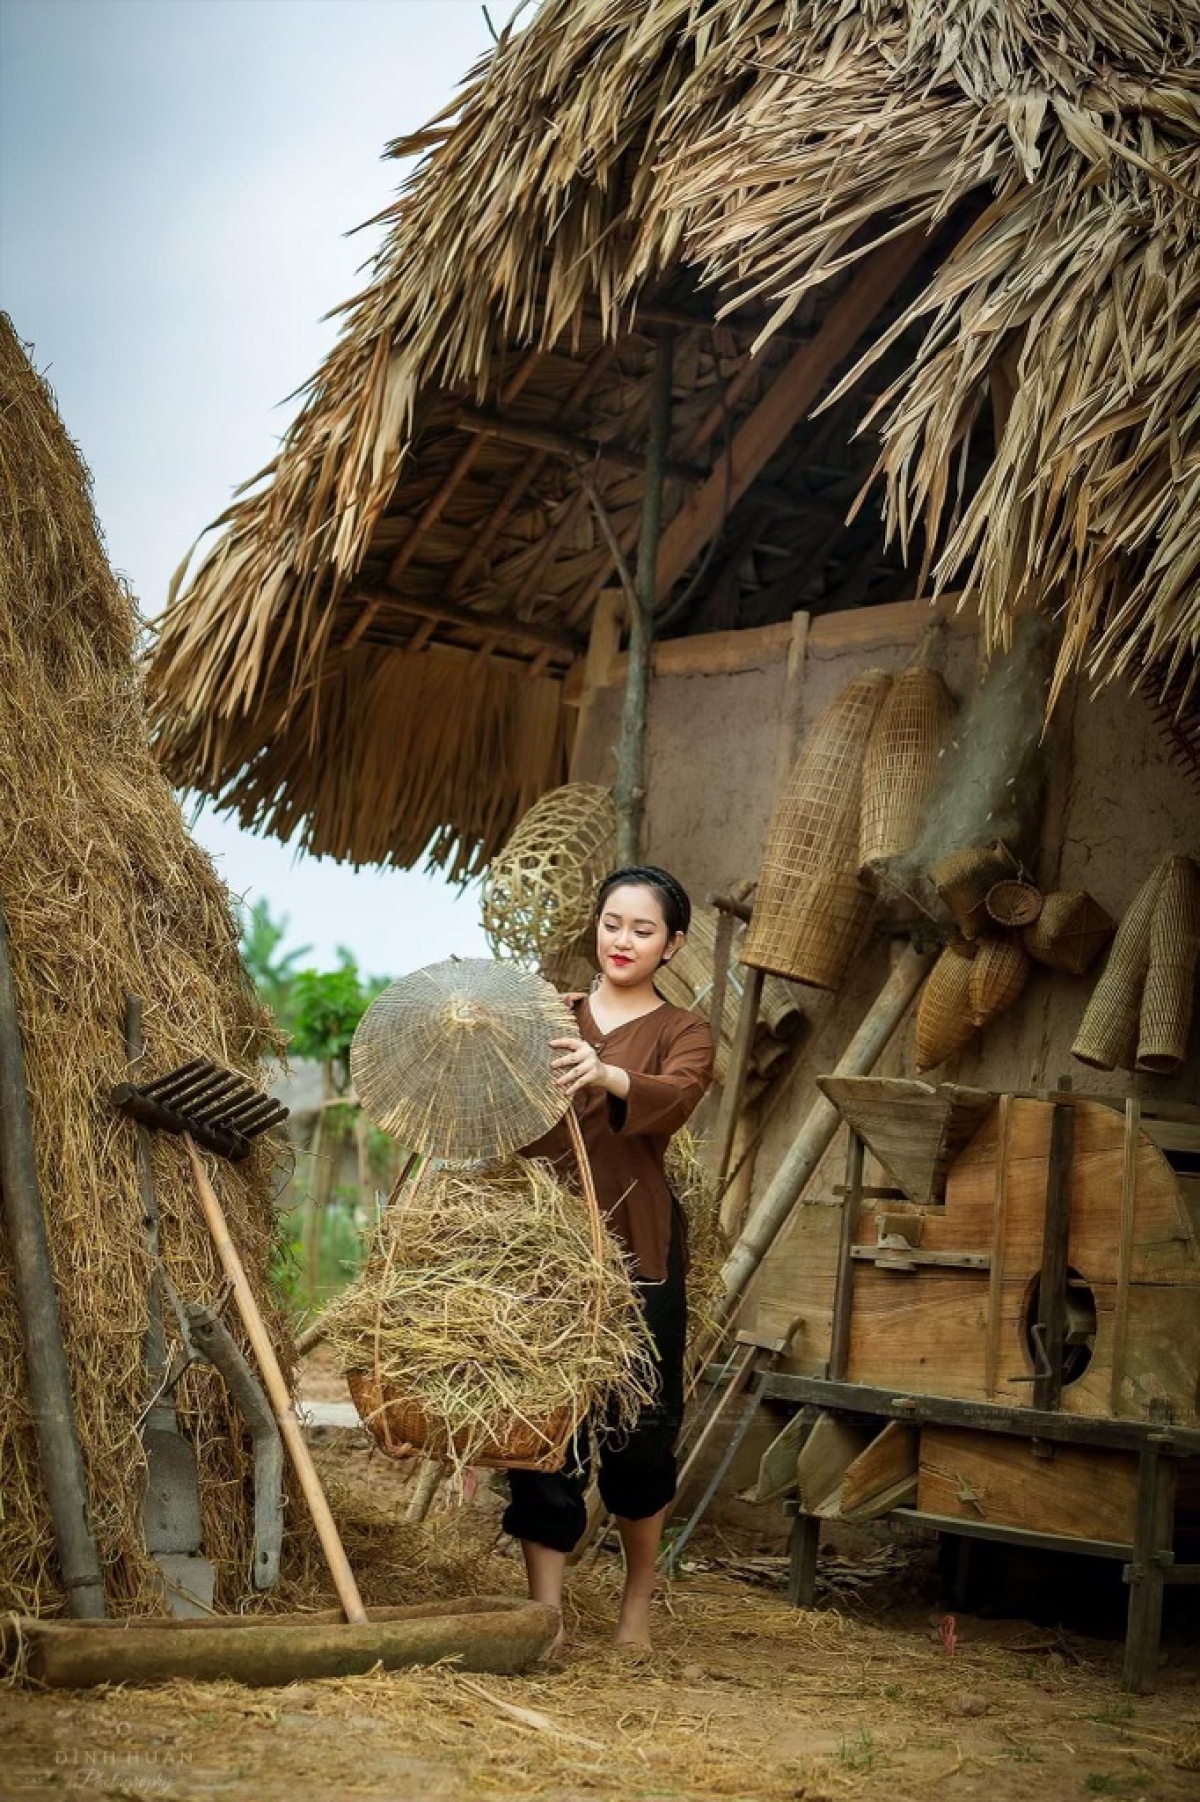 Làng quê Việt Nam - Khám phá vẻ đẹp yên bình và độc đáo của làng quê Việt Nam thông qua hình ảnh rực rỡ màu sắc. Trải nghiệm không khí trong lành, dân dã cùng với những người dân nơi đây.